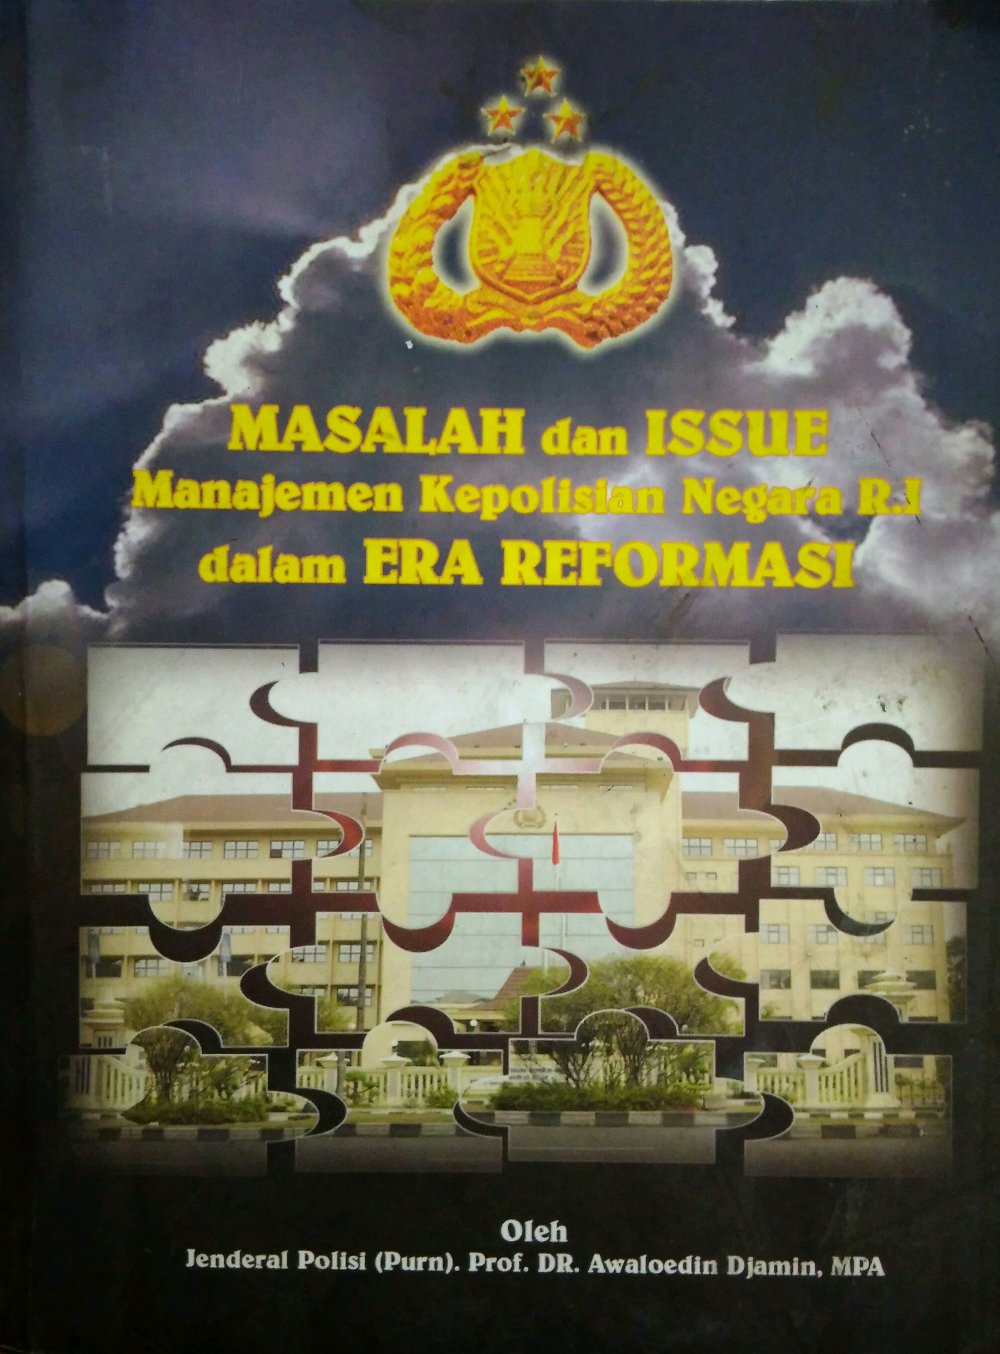 MASALAH dan ISSUE Manajemen Kepolisian Negara R.I dalam ERA REFORMASI